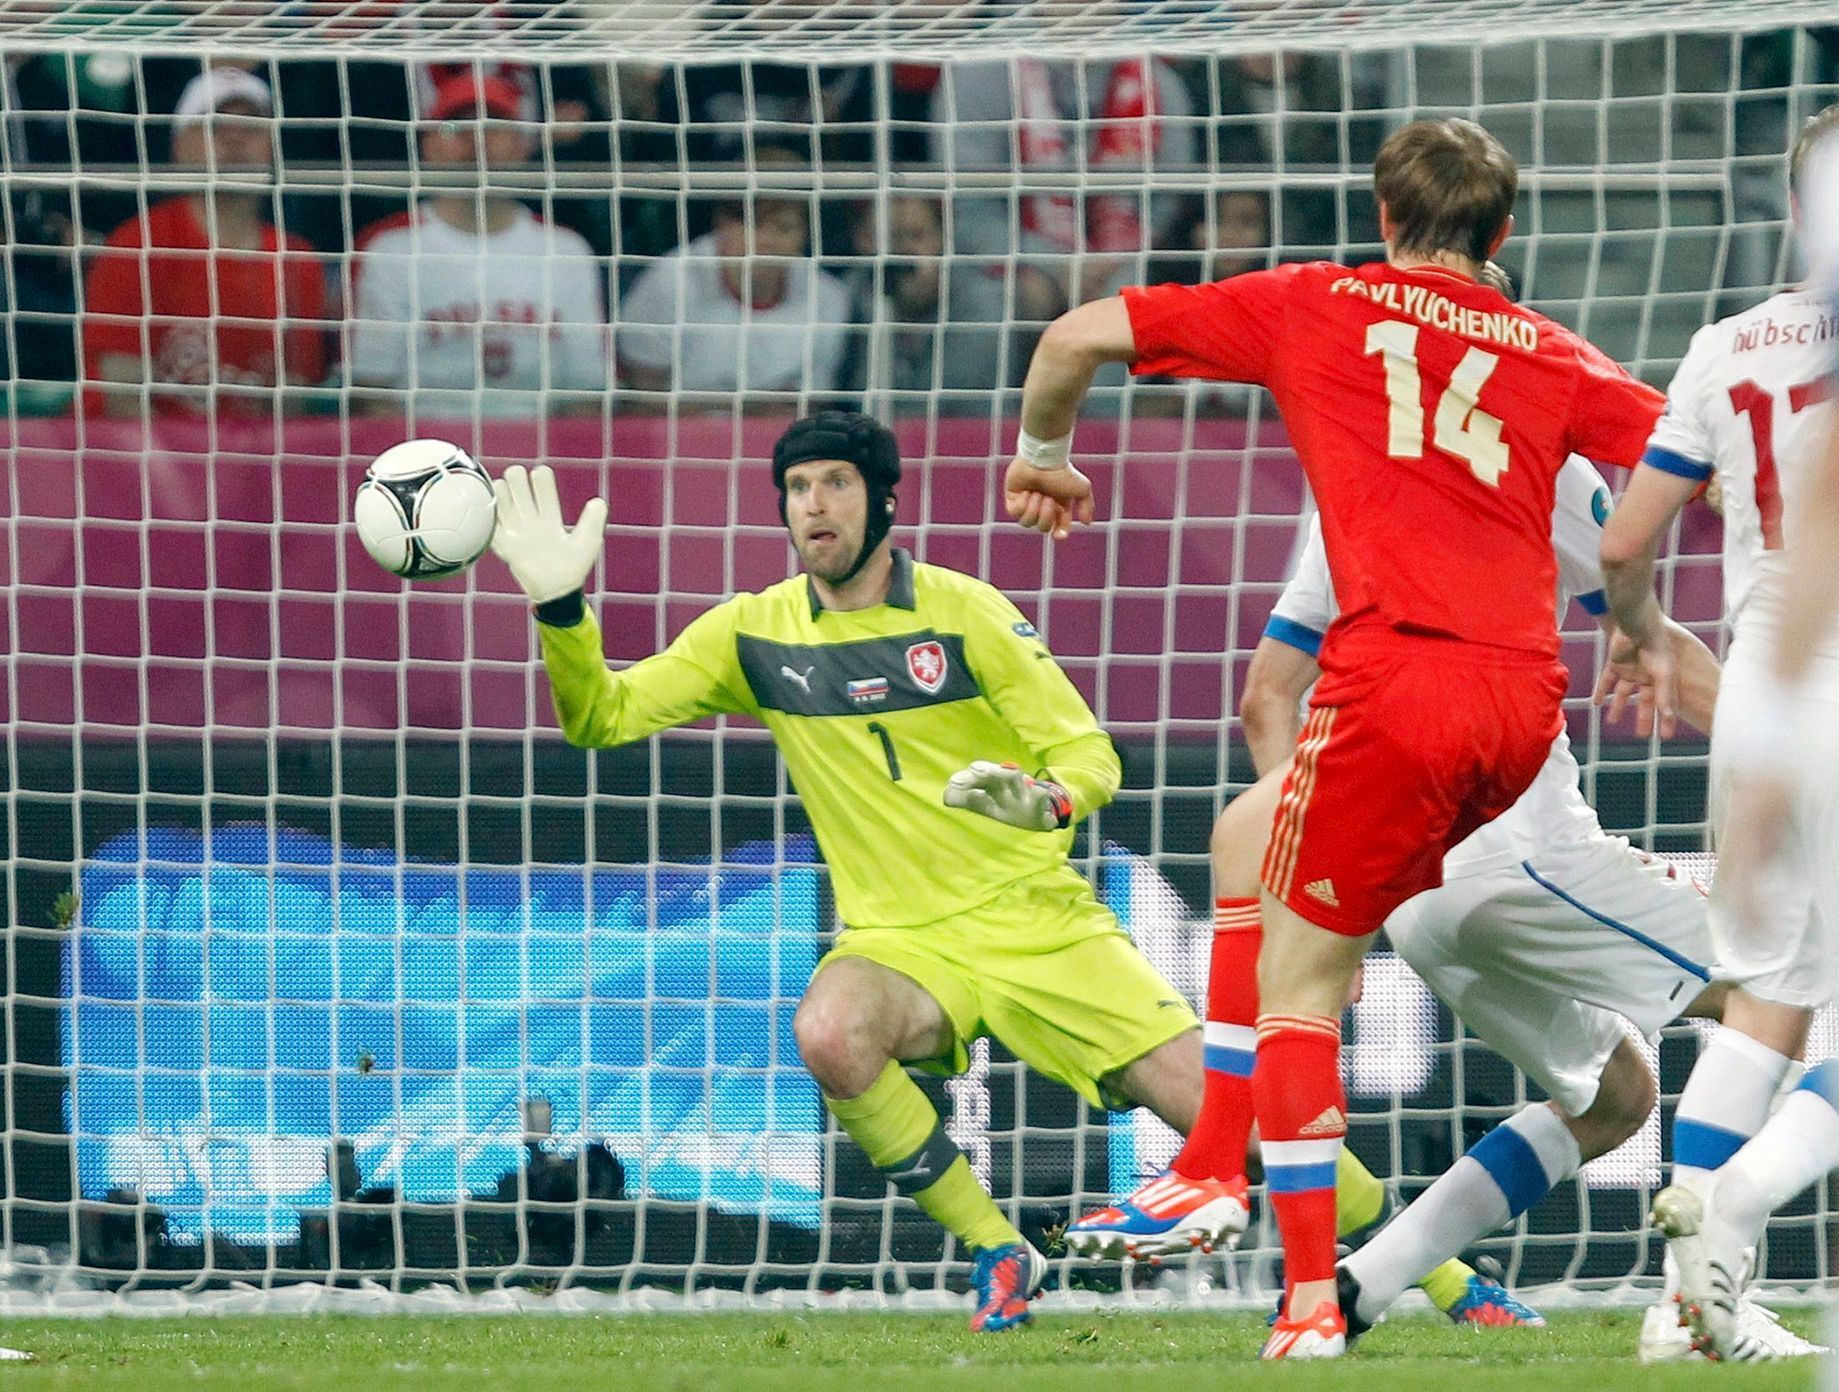 Roman Pavljučenko střílí gól v utkání Ruska s Českou republikou na Euru 2012